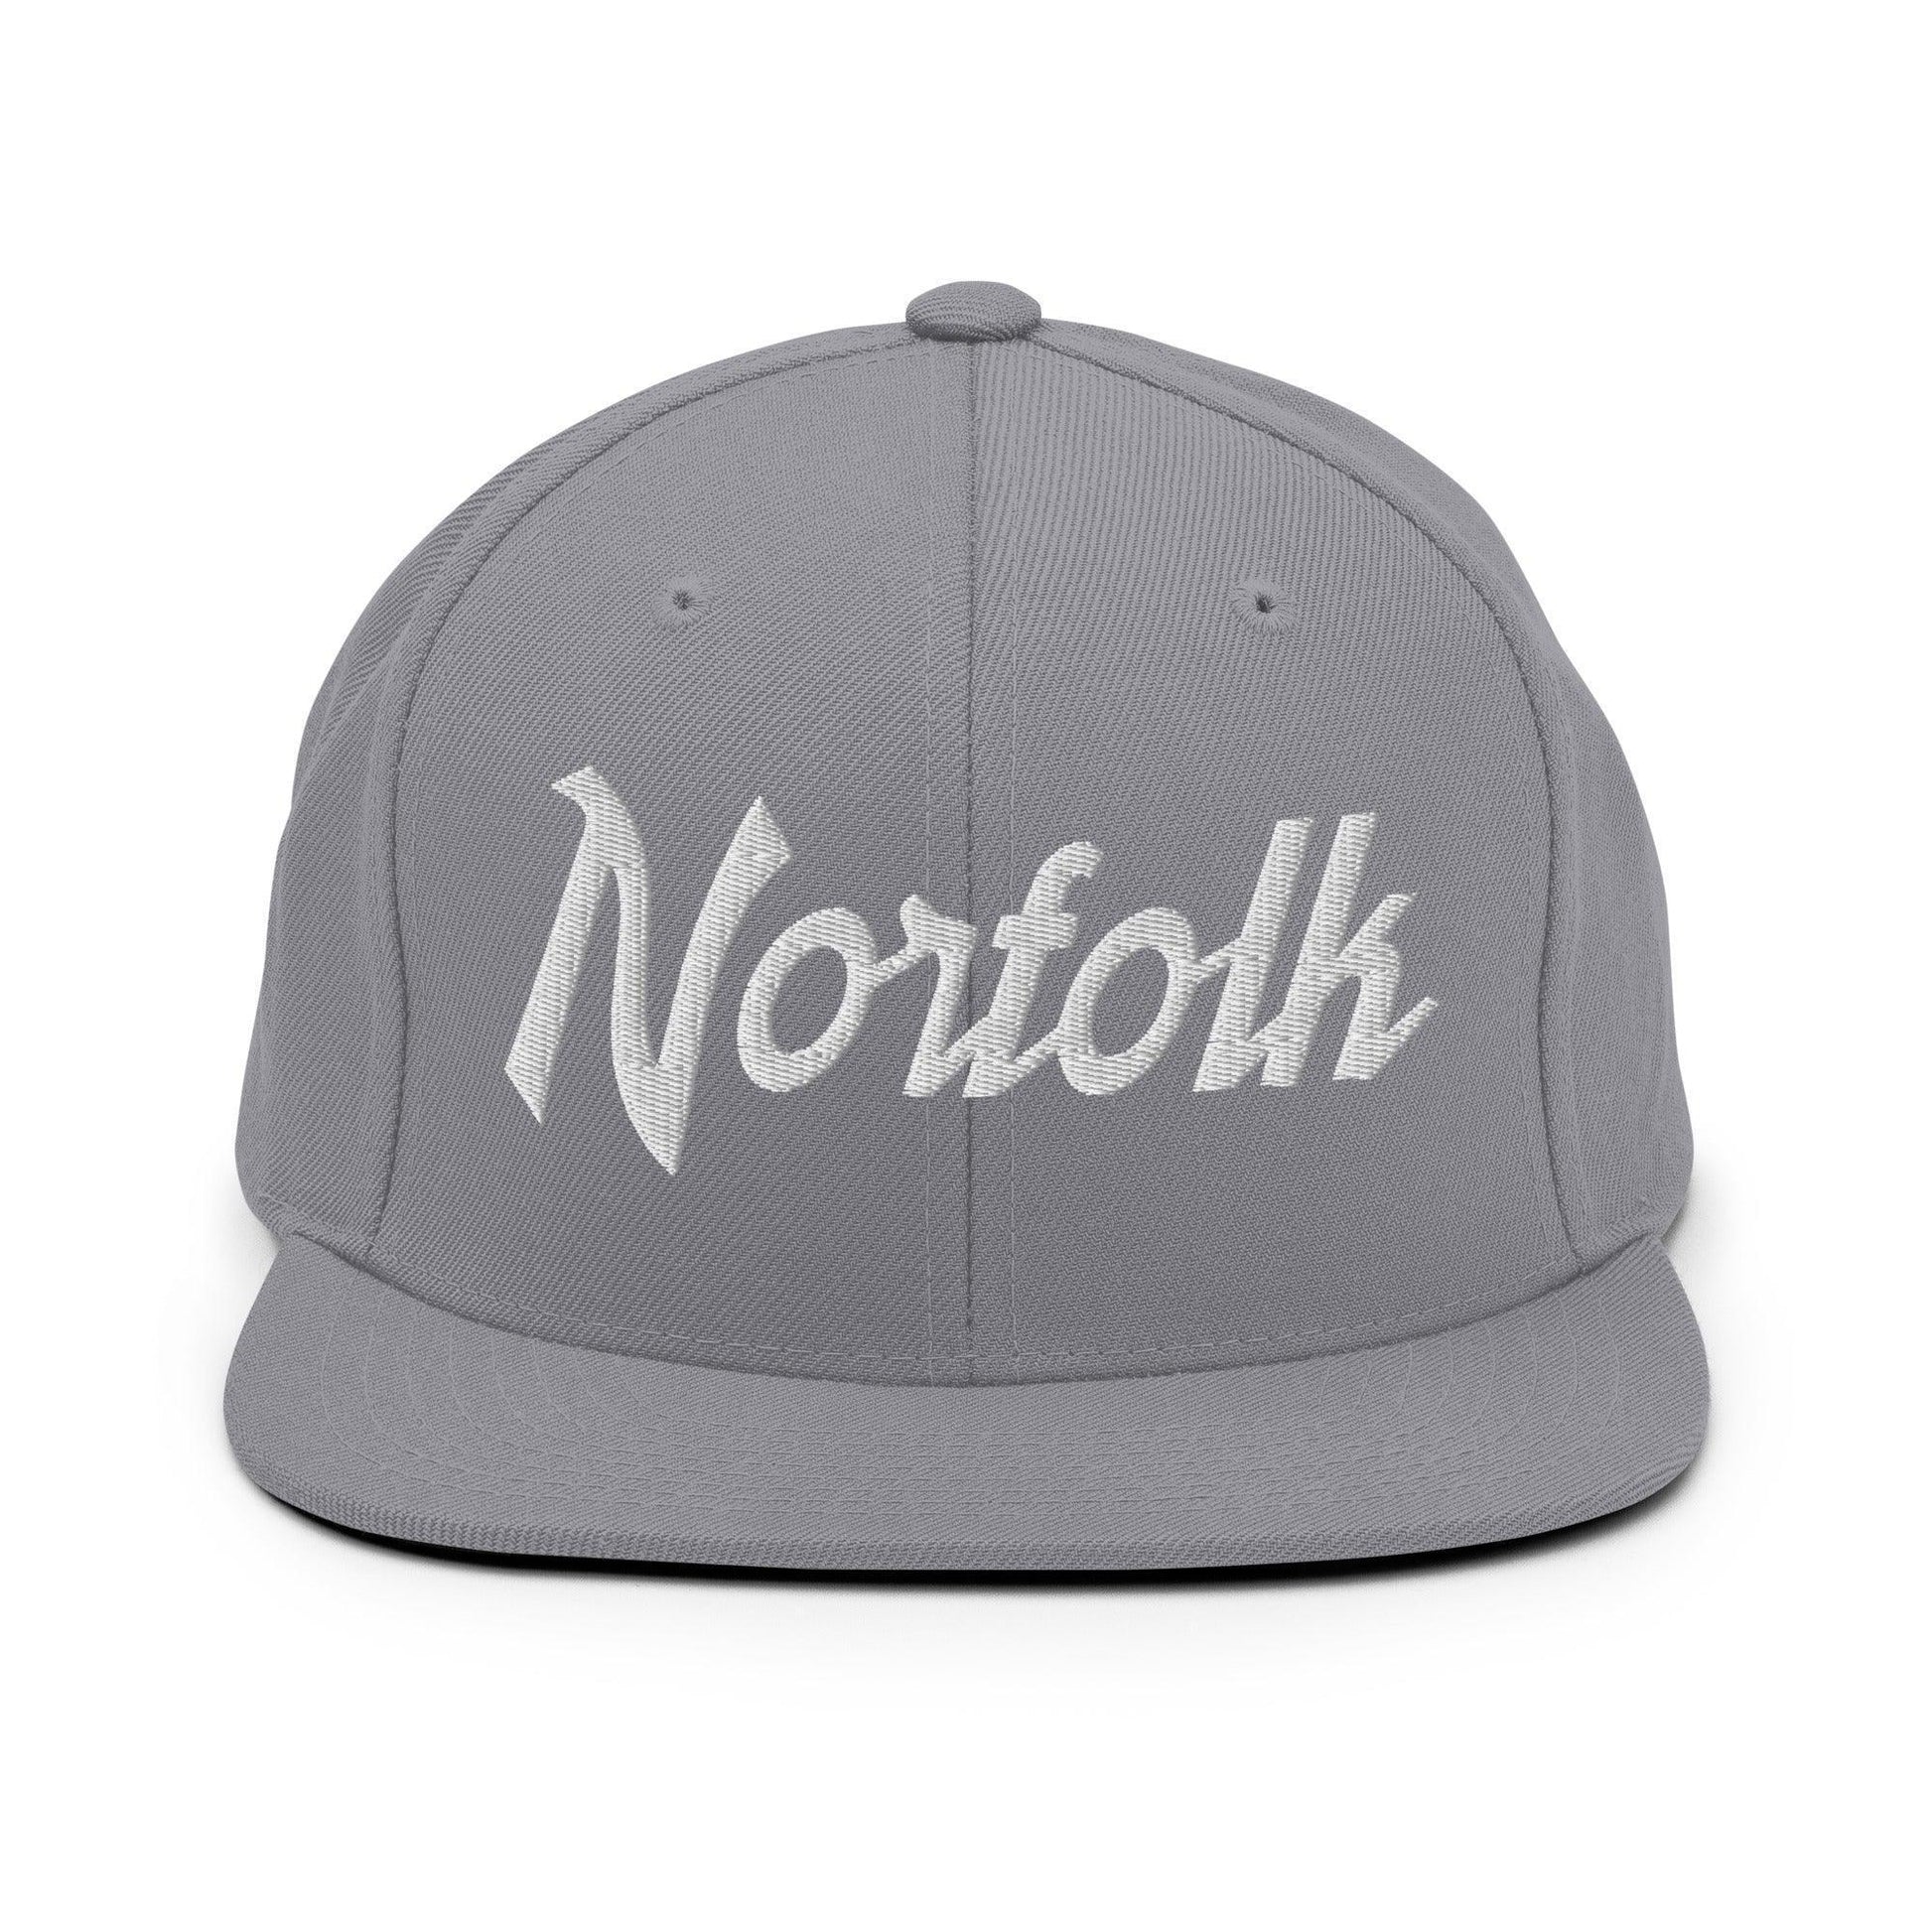 Norfolk Script Snapback Hat Silver